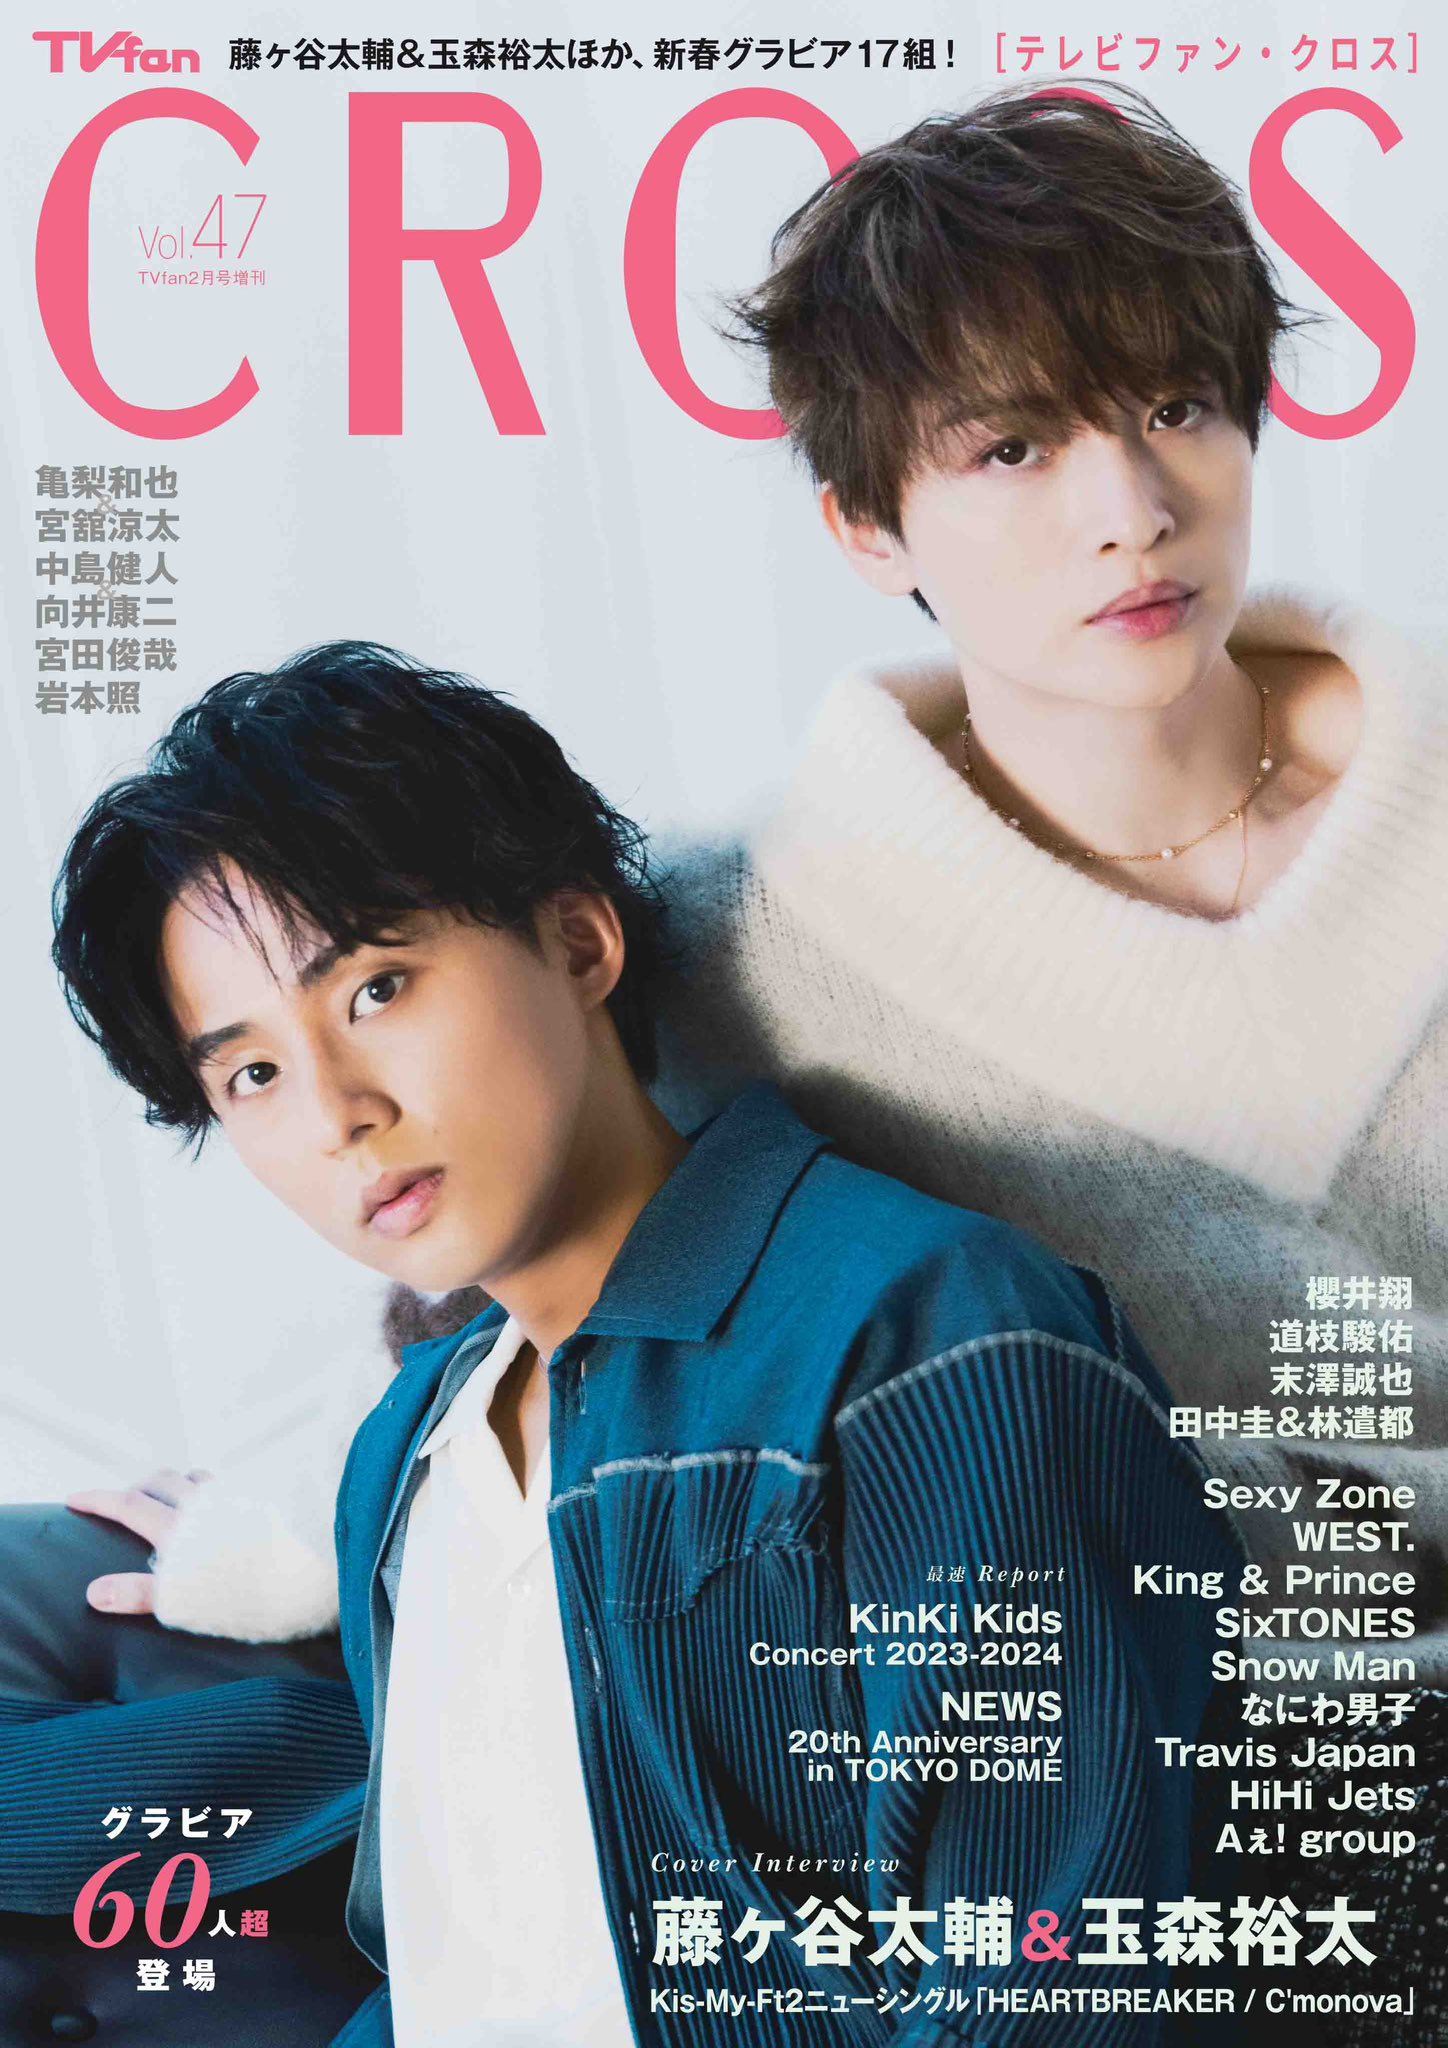 47 TV fan CROSS 2020年 vol.33 表紙:V6 - 雑誌